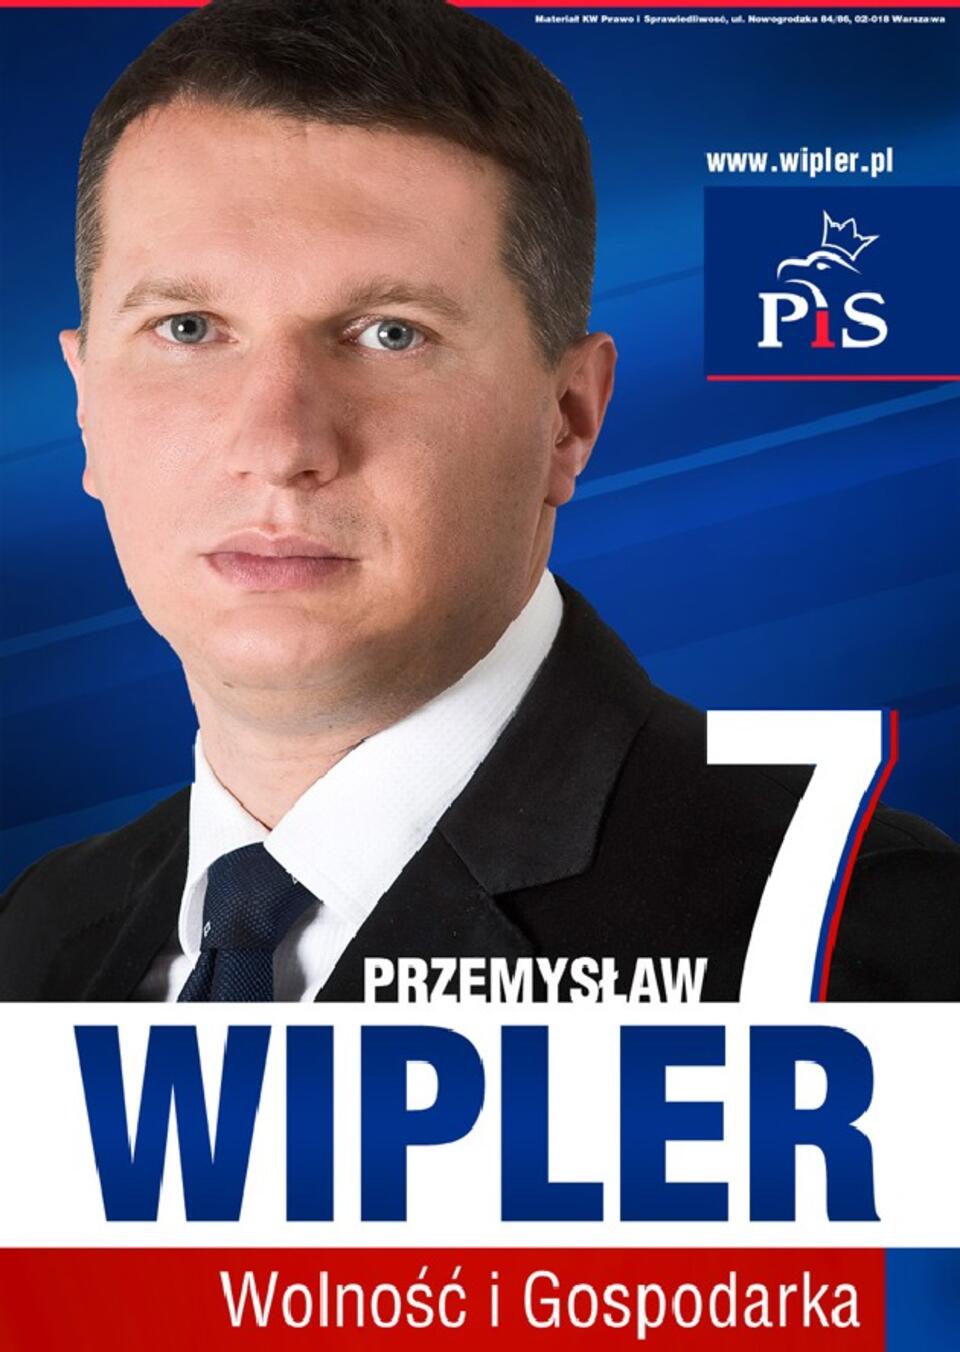 www.wipler.pl 